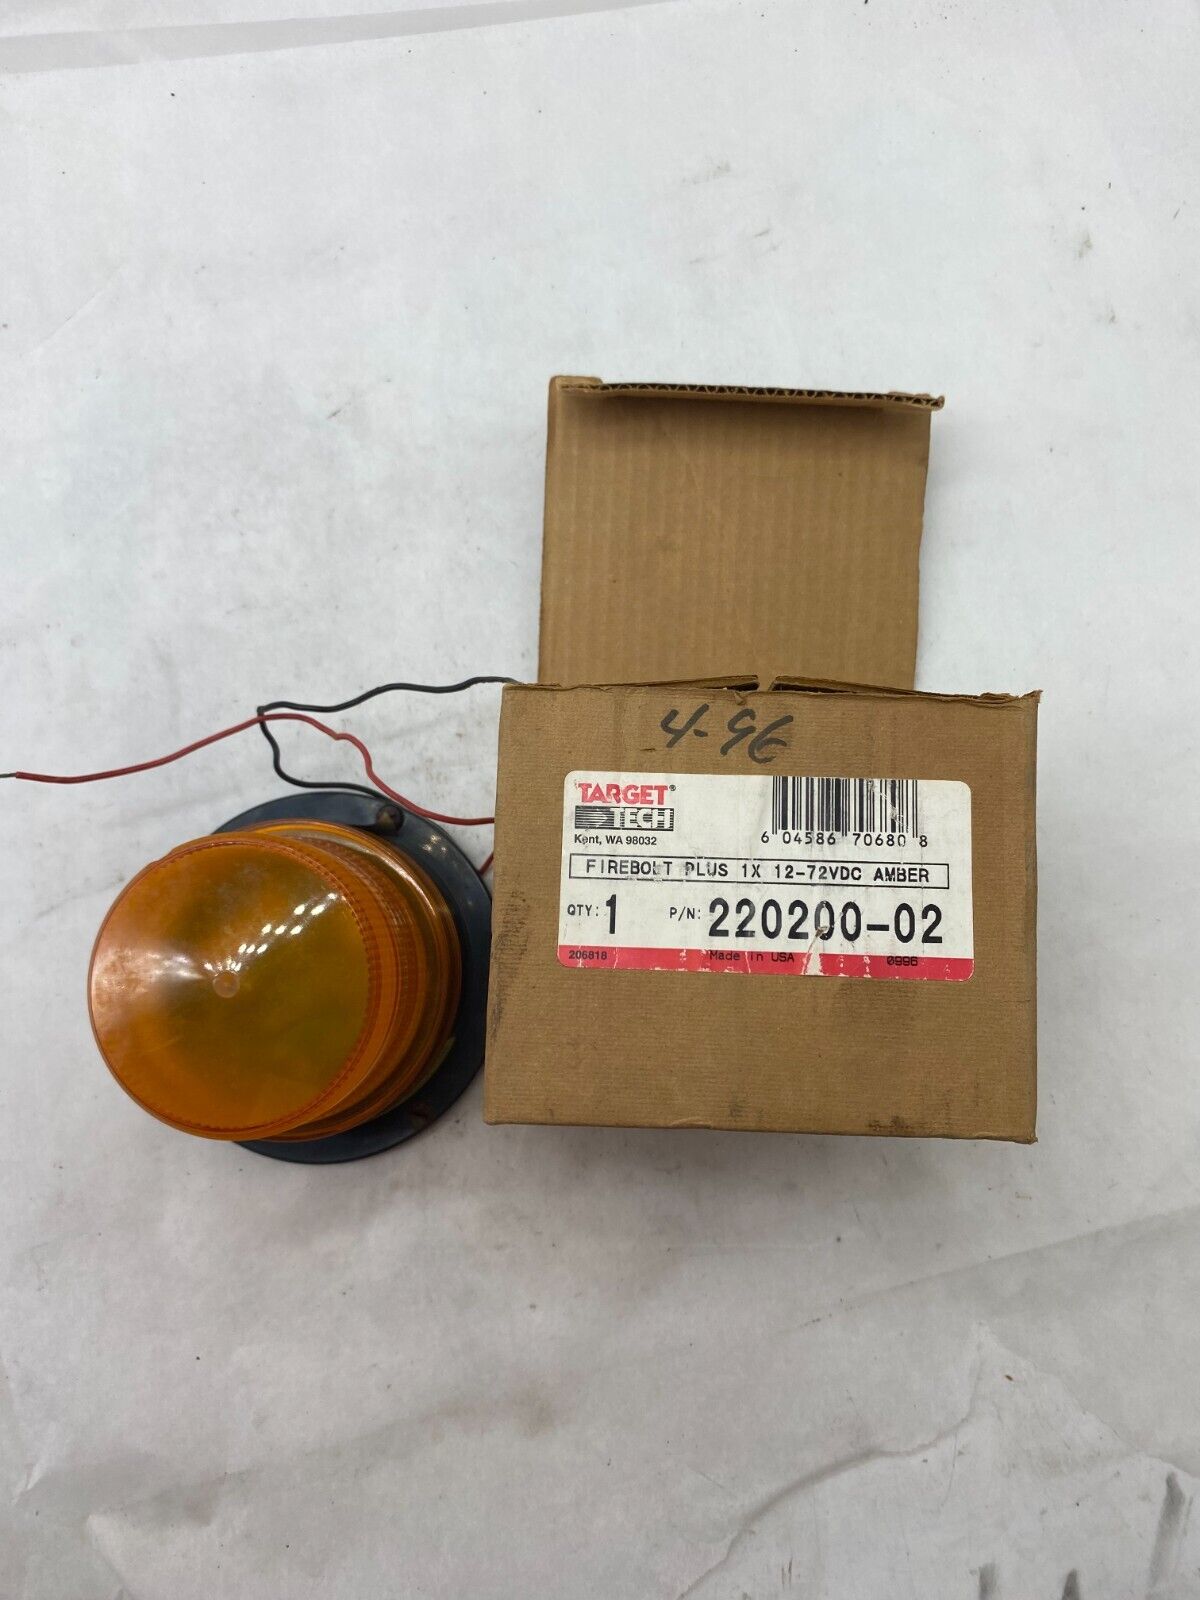 Target Tech 220200-02 Firebolt Plug Strobe Lamp Amber 12-72 242T